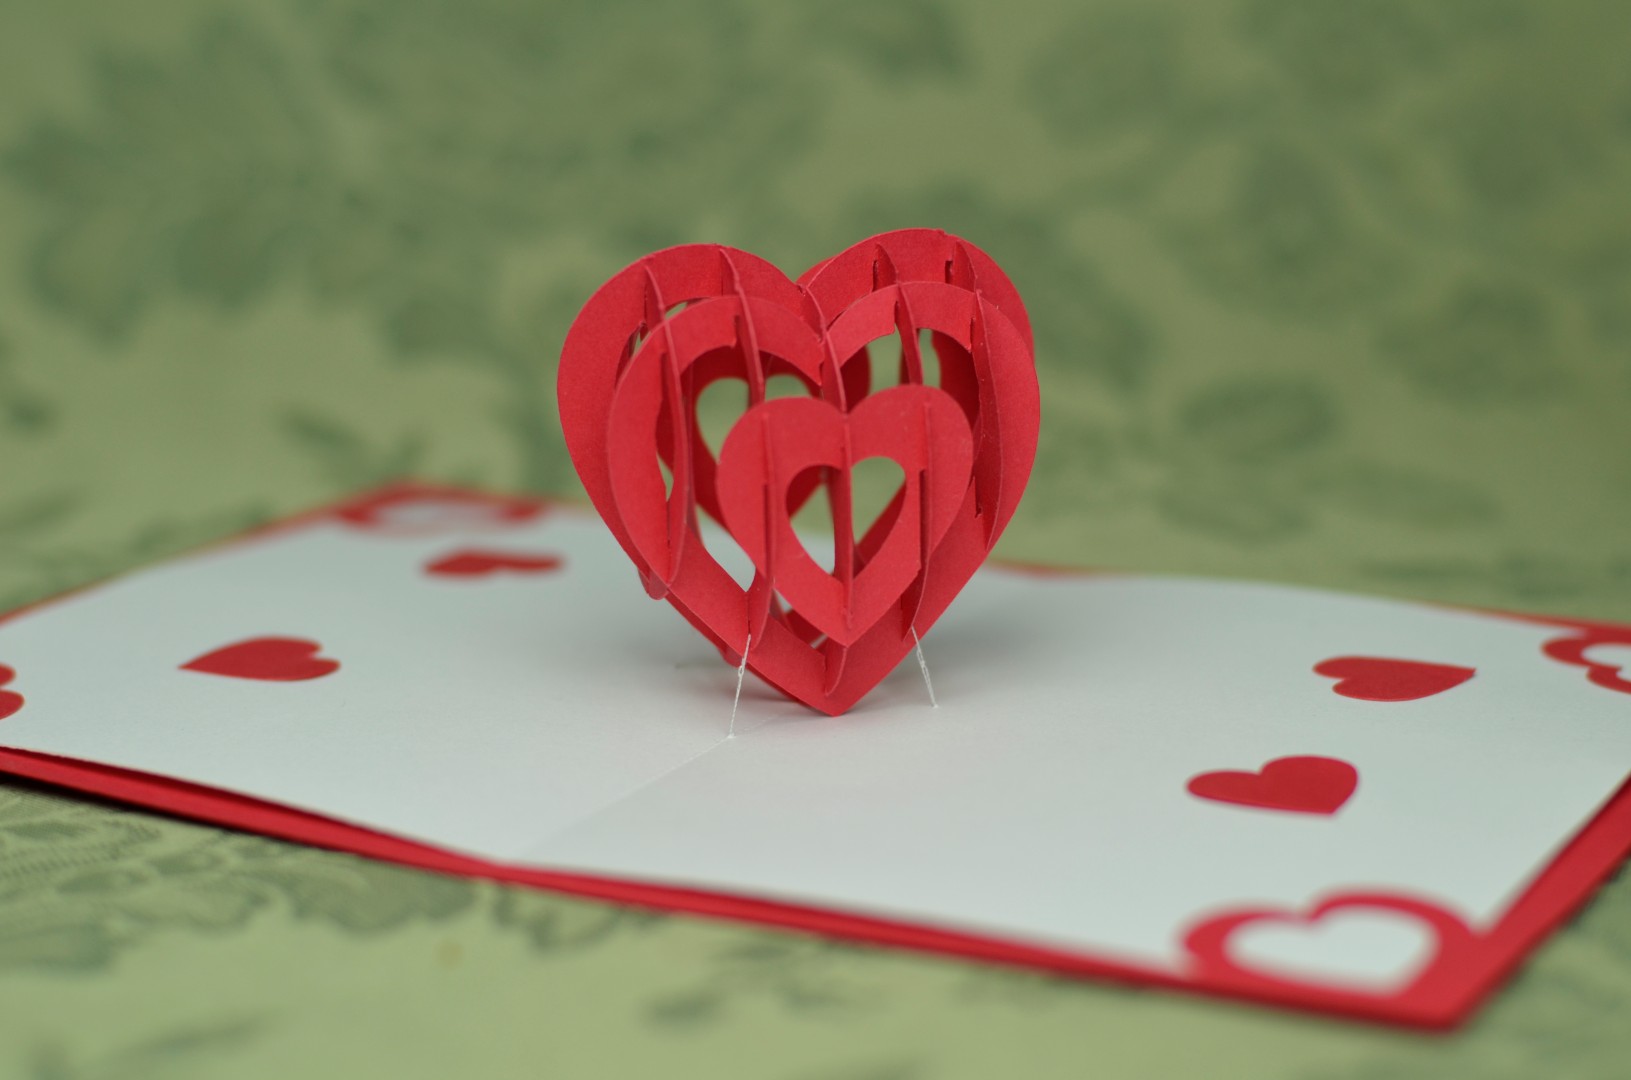 21D Heart Pop Up Card Template Regarding 3d Heart Pop Up Card Template Pdf